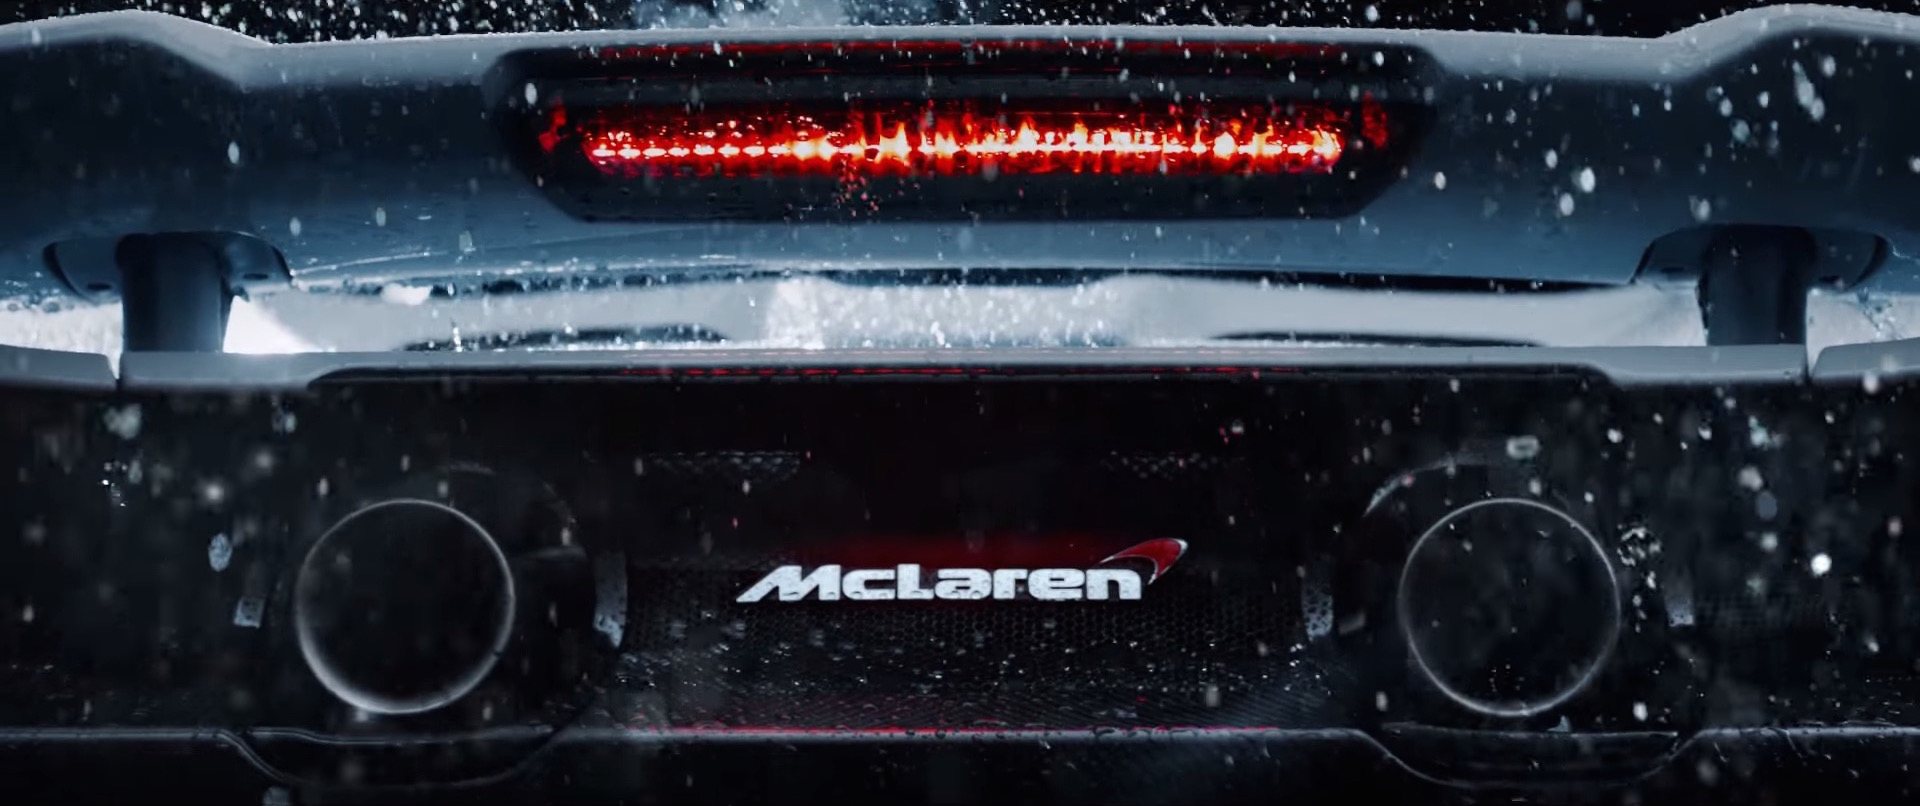 The McLaren 675LT_4